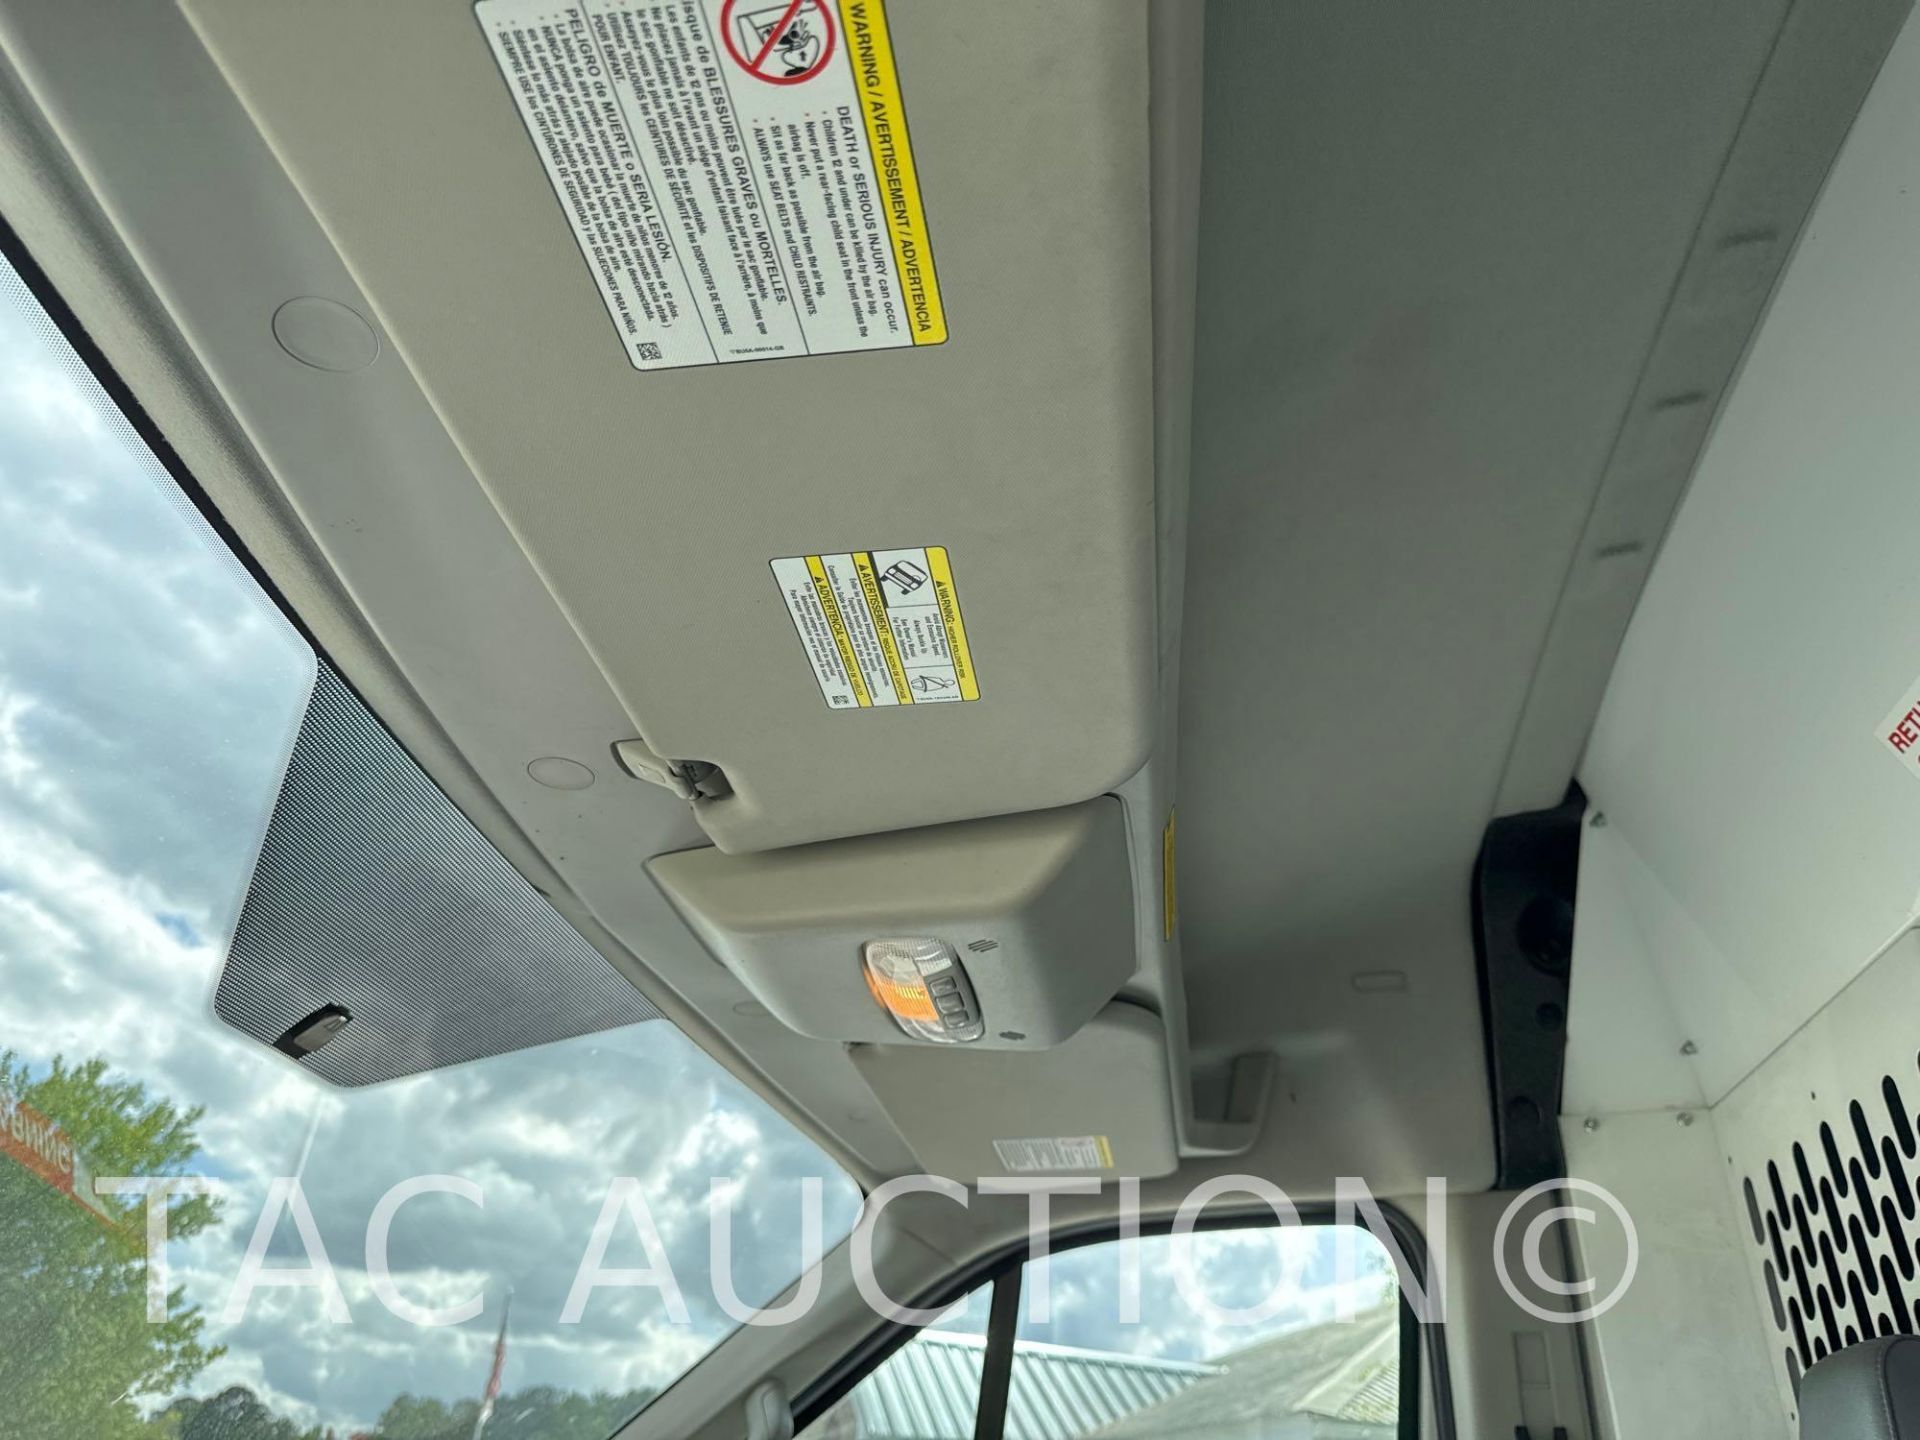 2019 Ford Transit 150 Cargo Van - Image 8 of 43